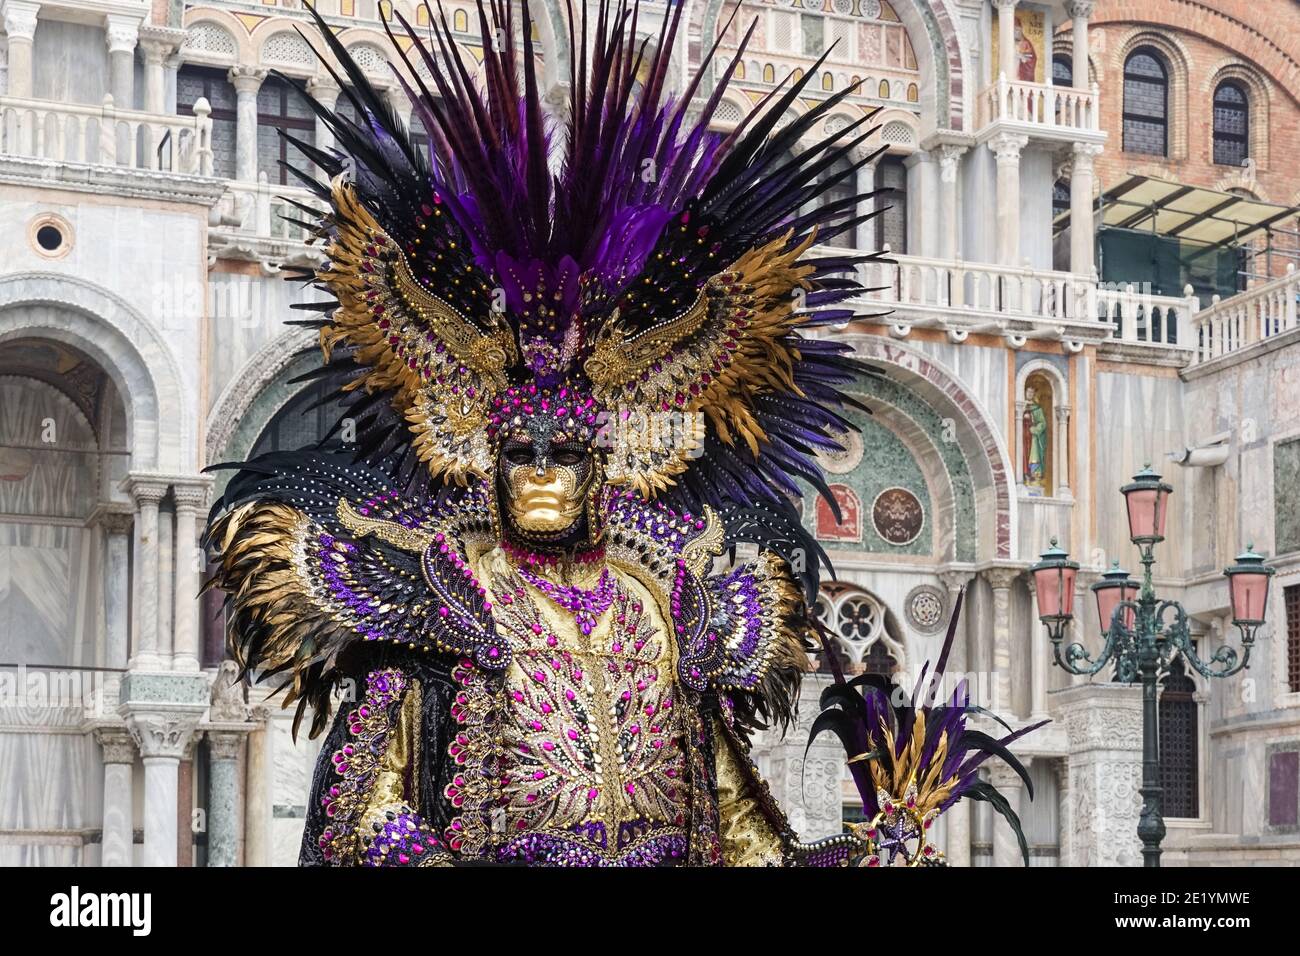 Homme vêtu d'un costume traditionnel décoré et d'un masque peint lors du Carnaval de Venise à Venise, en Italie Banque D'Images